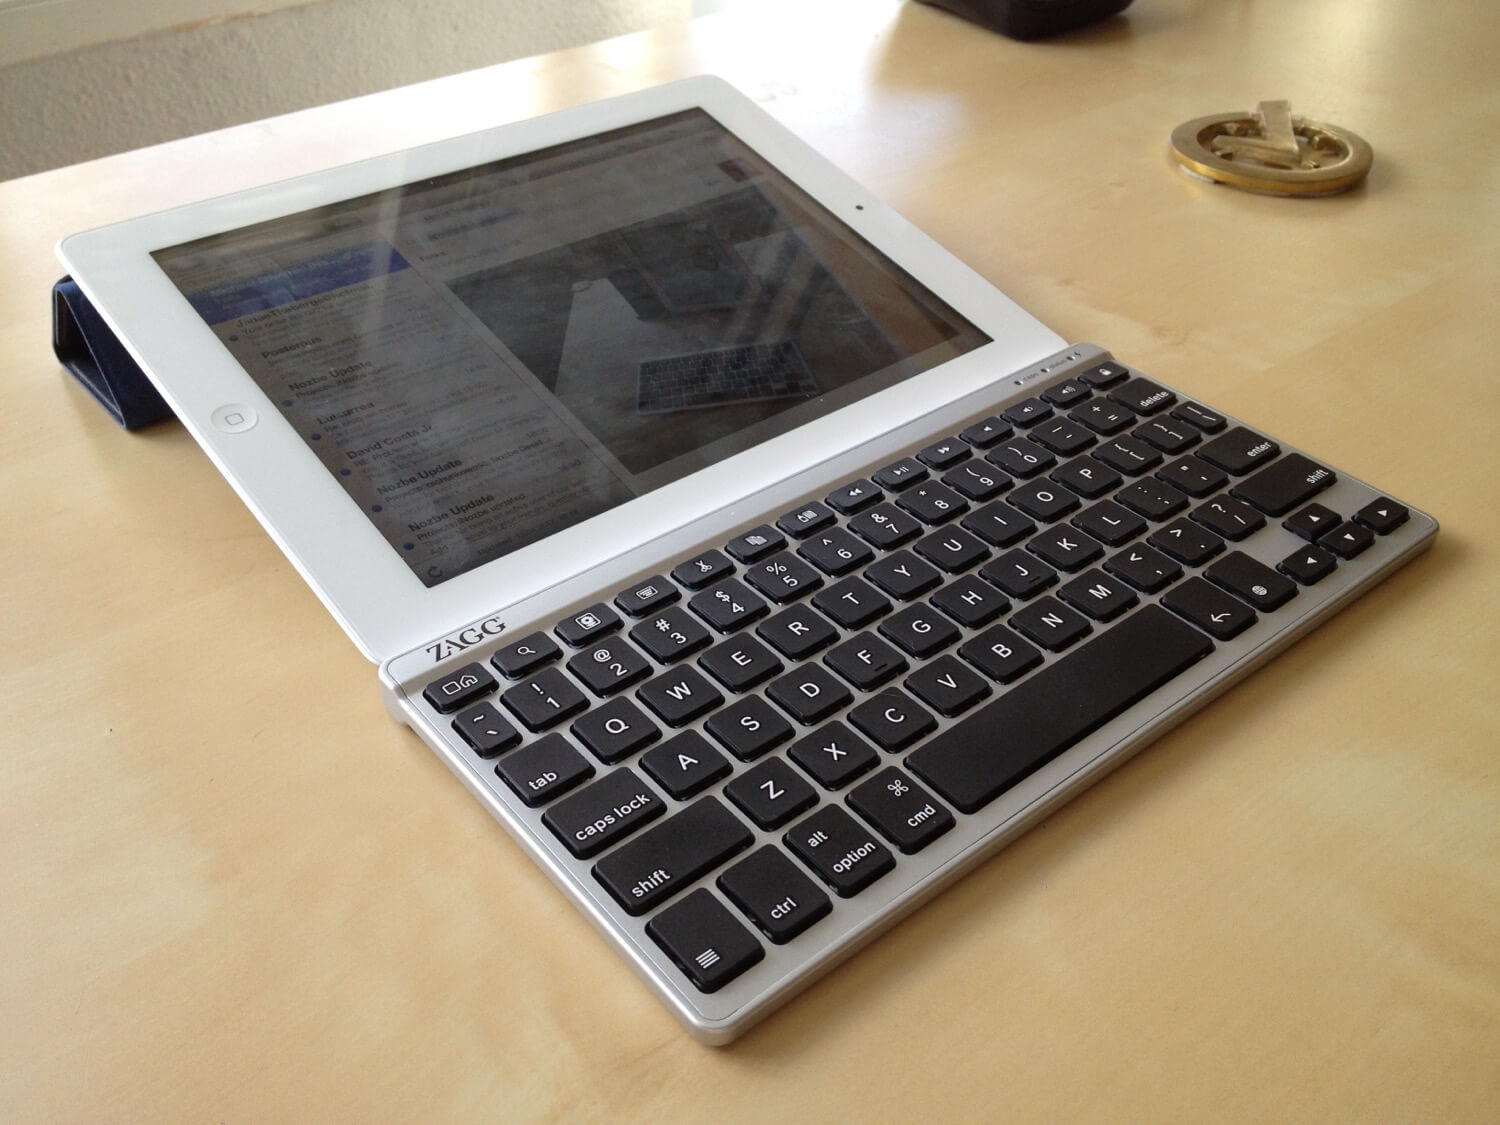 Part 2 - Writing - iPad as my main computer 2